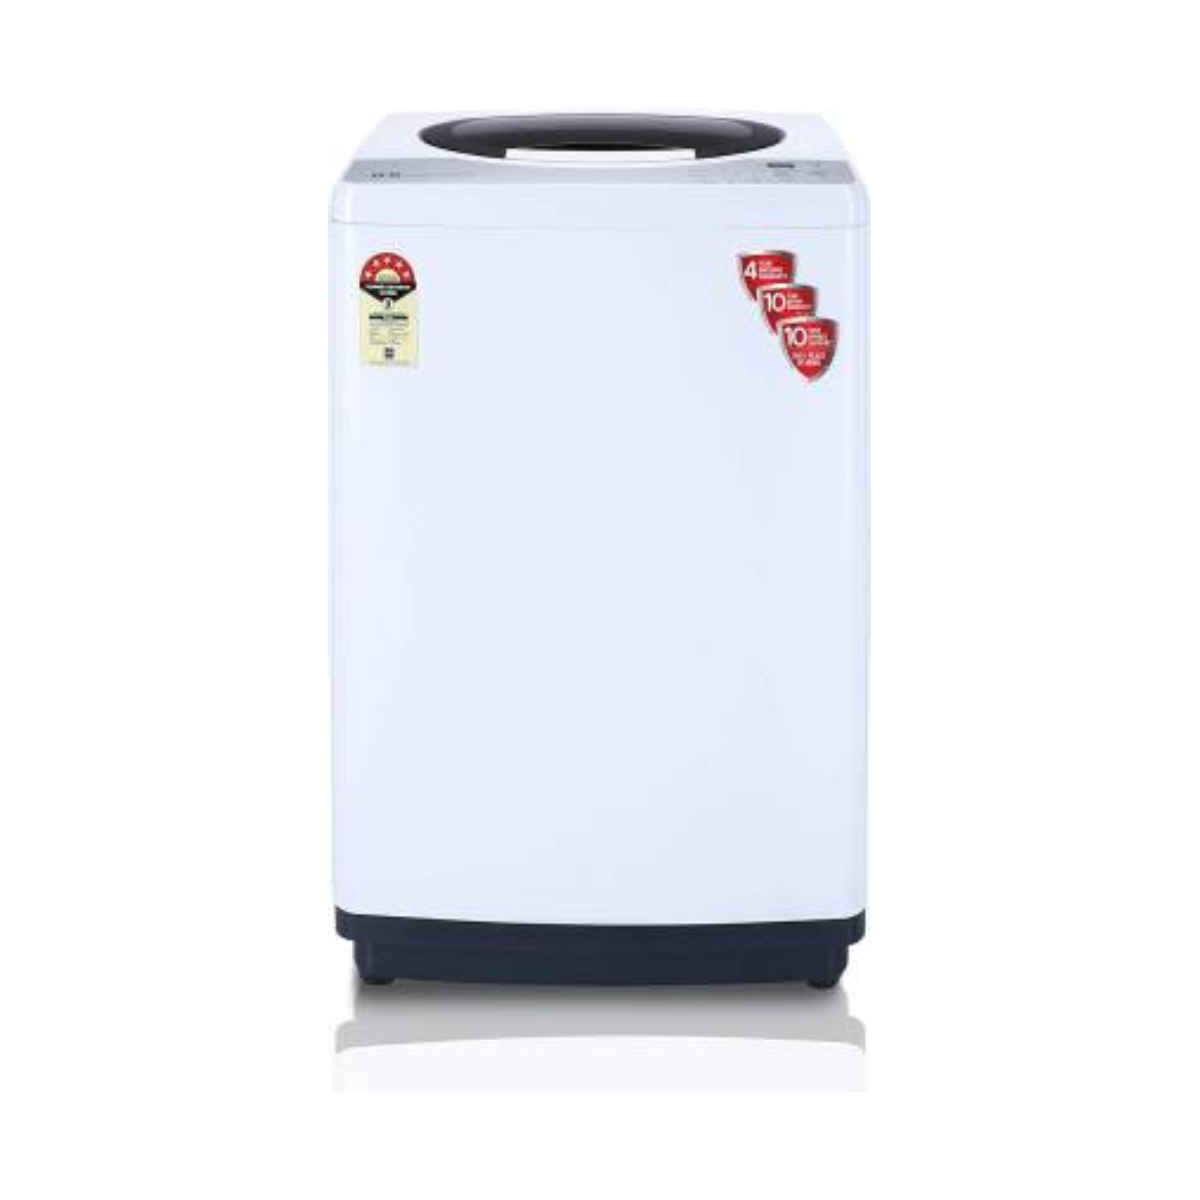 IFB 6.5 kg Fully Automatic மேலே Load washing machine (TL REWH 6.5 kg Aqua) 